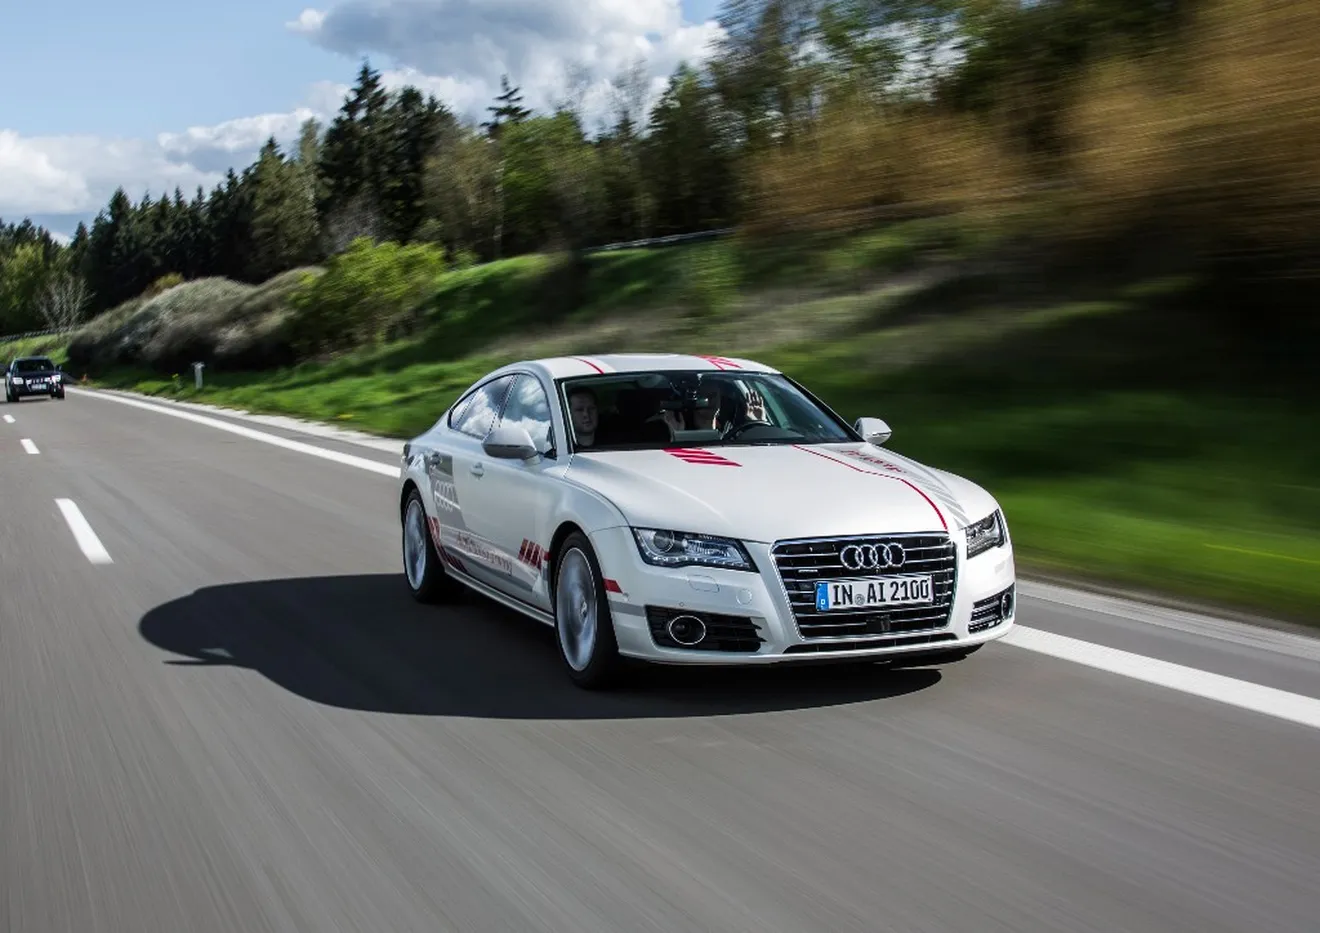 El Audi A7 autónomo muestra sus avances en la autopista alemana